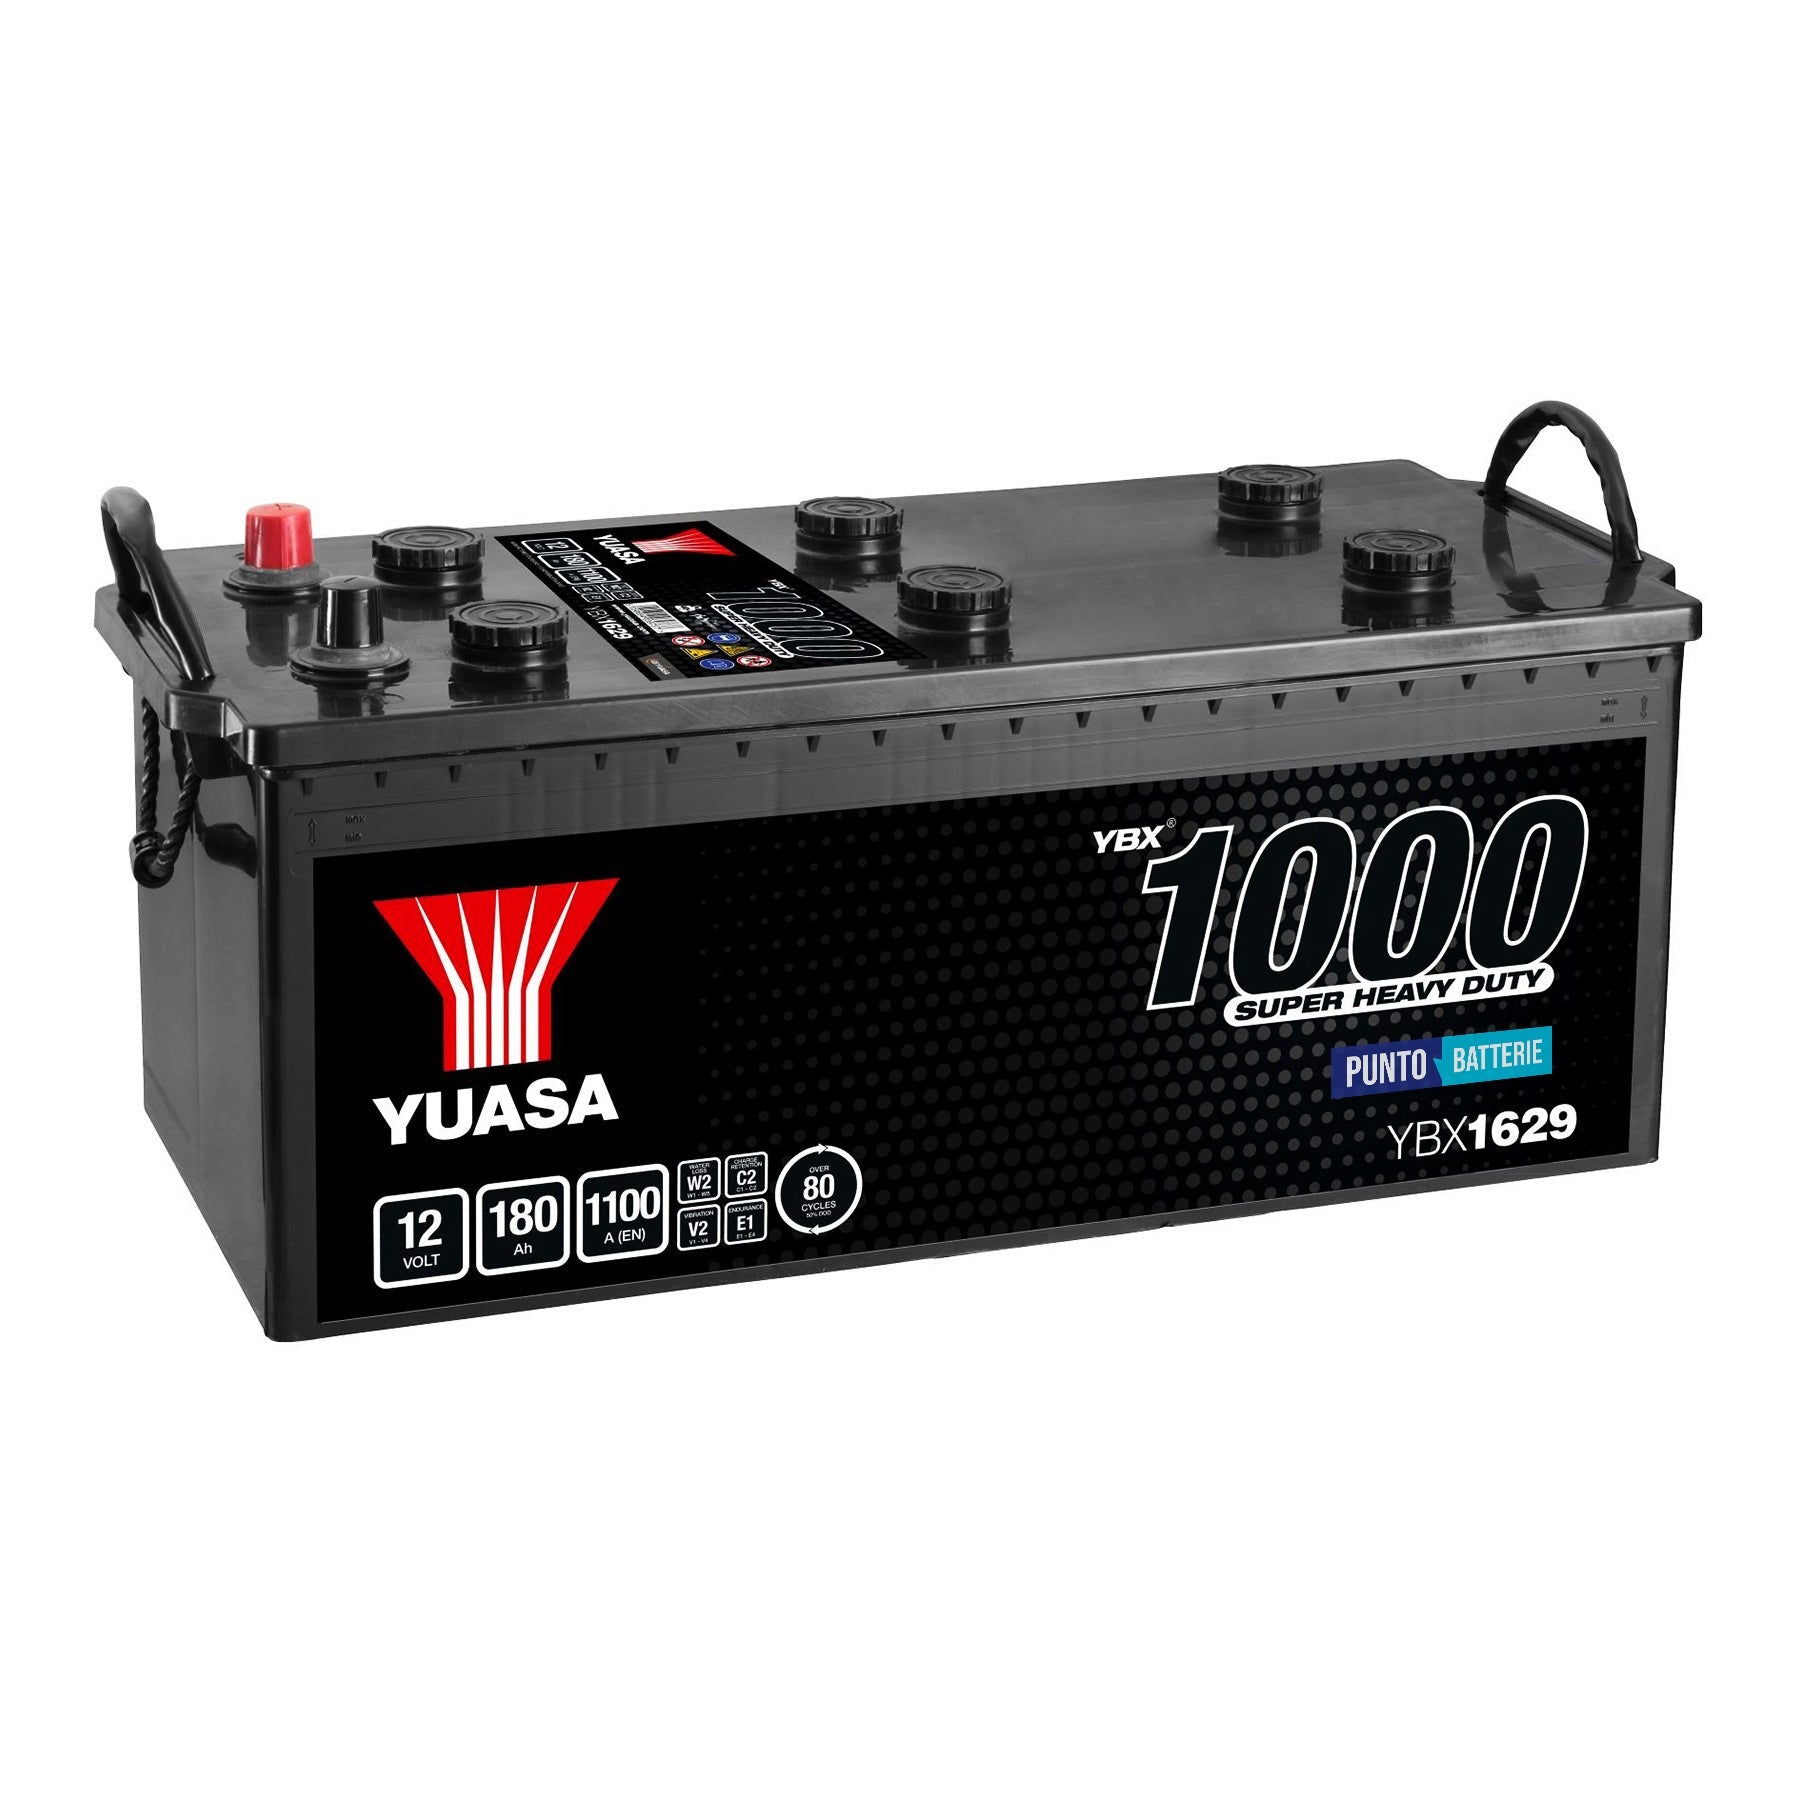 Batteria originale Yuasa YBX1000 YBX1629, dimensioni 513 x 223 x 223, polo positivo a sinistra, 12 volt, 180 amperora, 1100 ampere. Batteria per camion e veicoli pesanti.